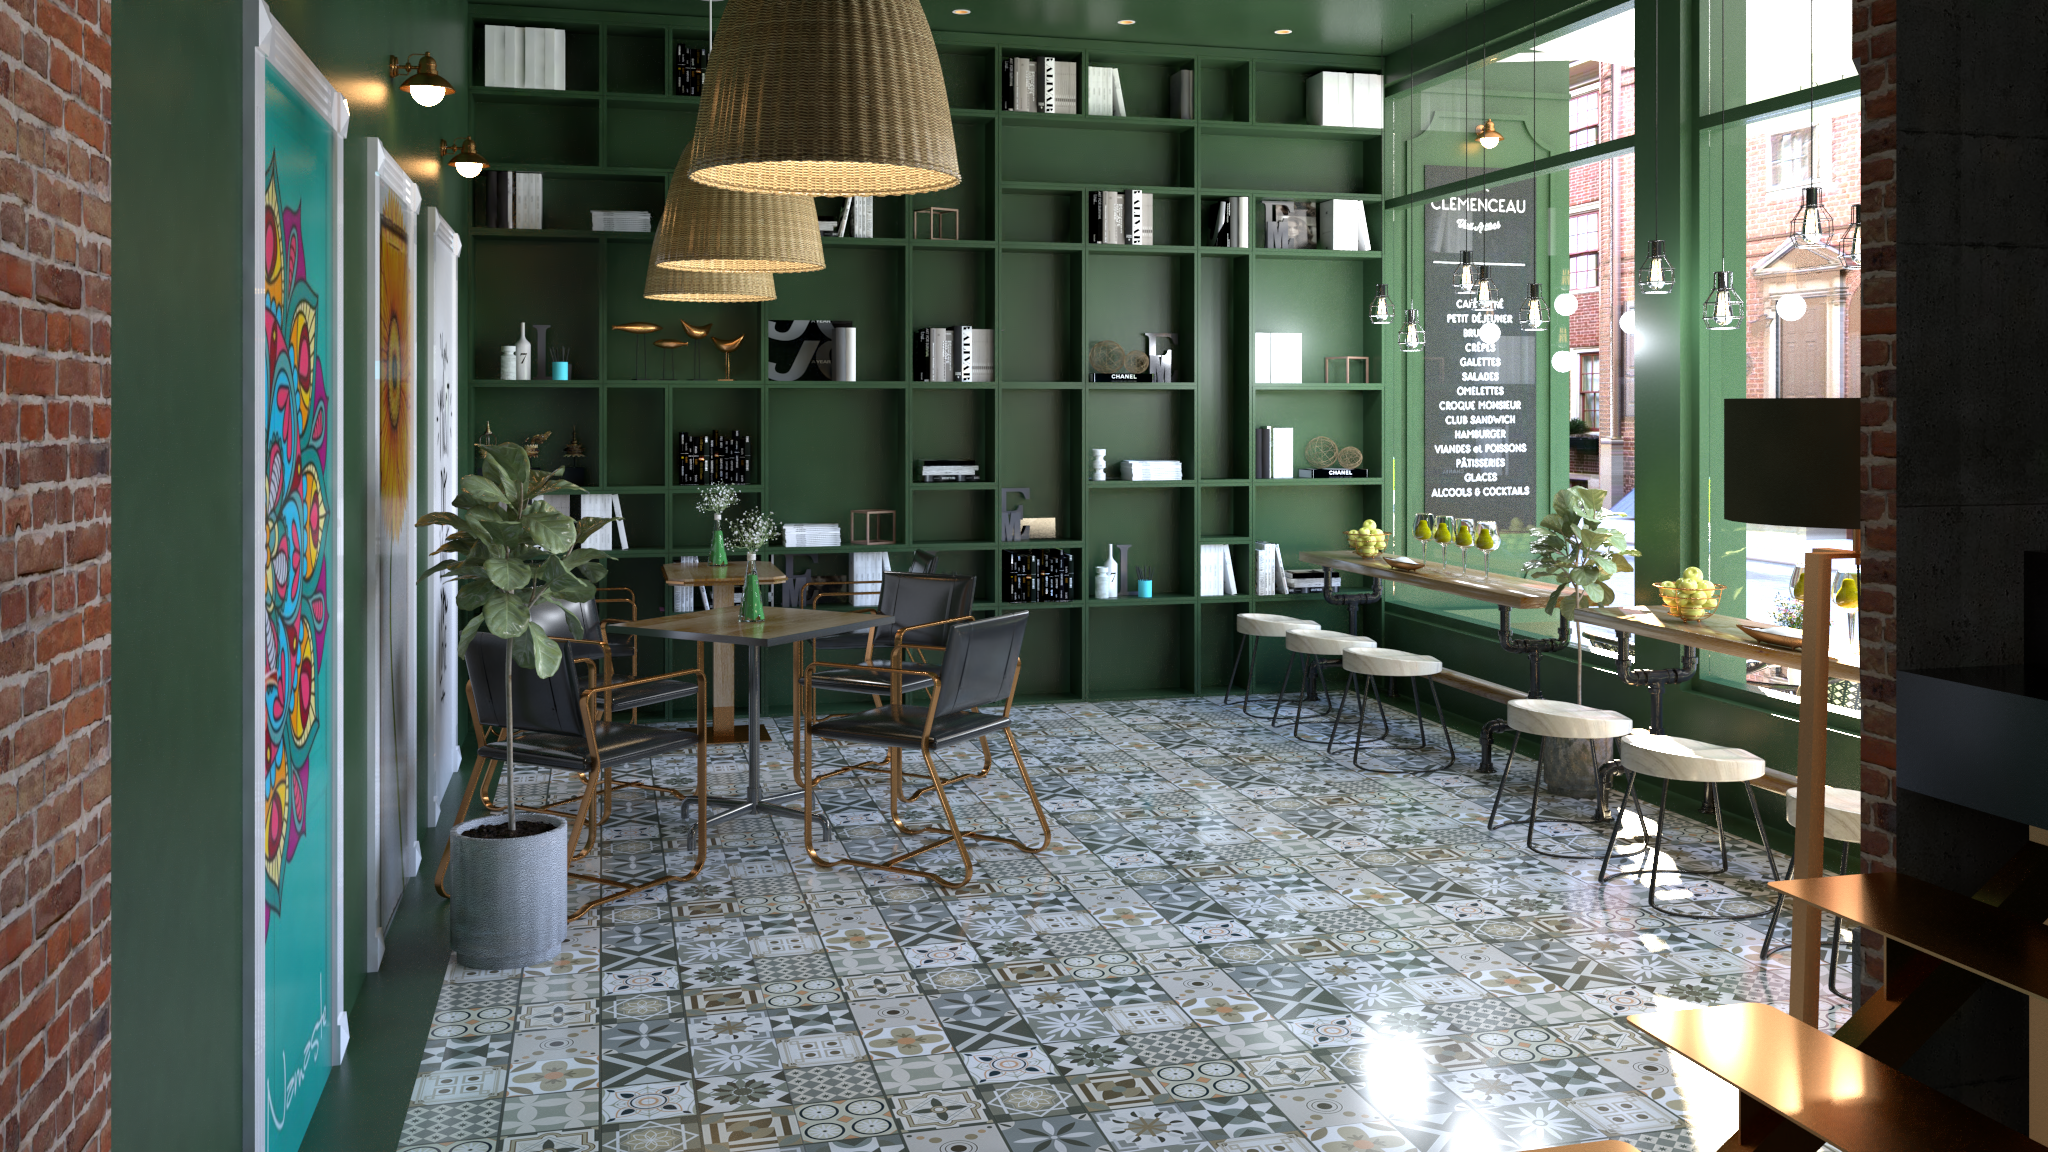 Thiết kế nội thất Đồ Án Kiến Trúc tại Hà Nội Thiết kế các phối cảnh sử dụng gạch điểm Catalan cho bài viết 